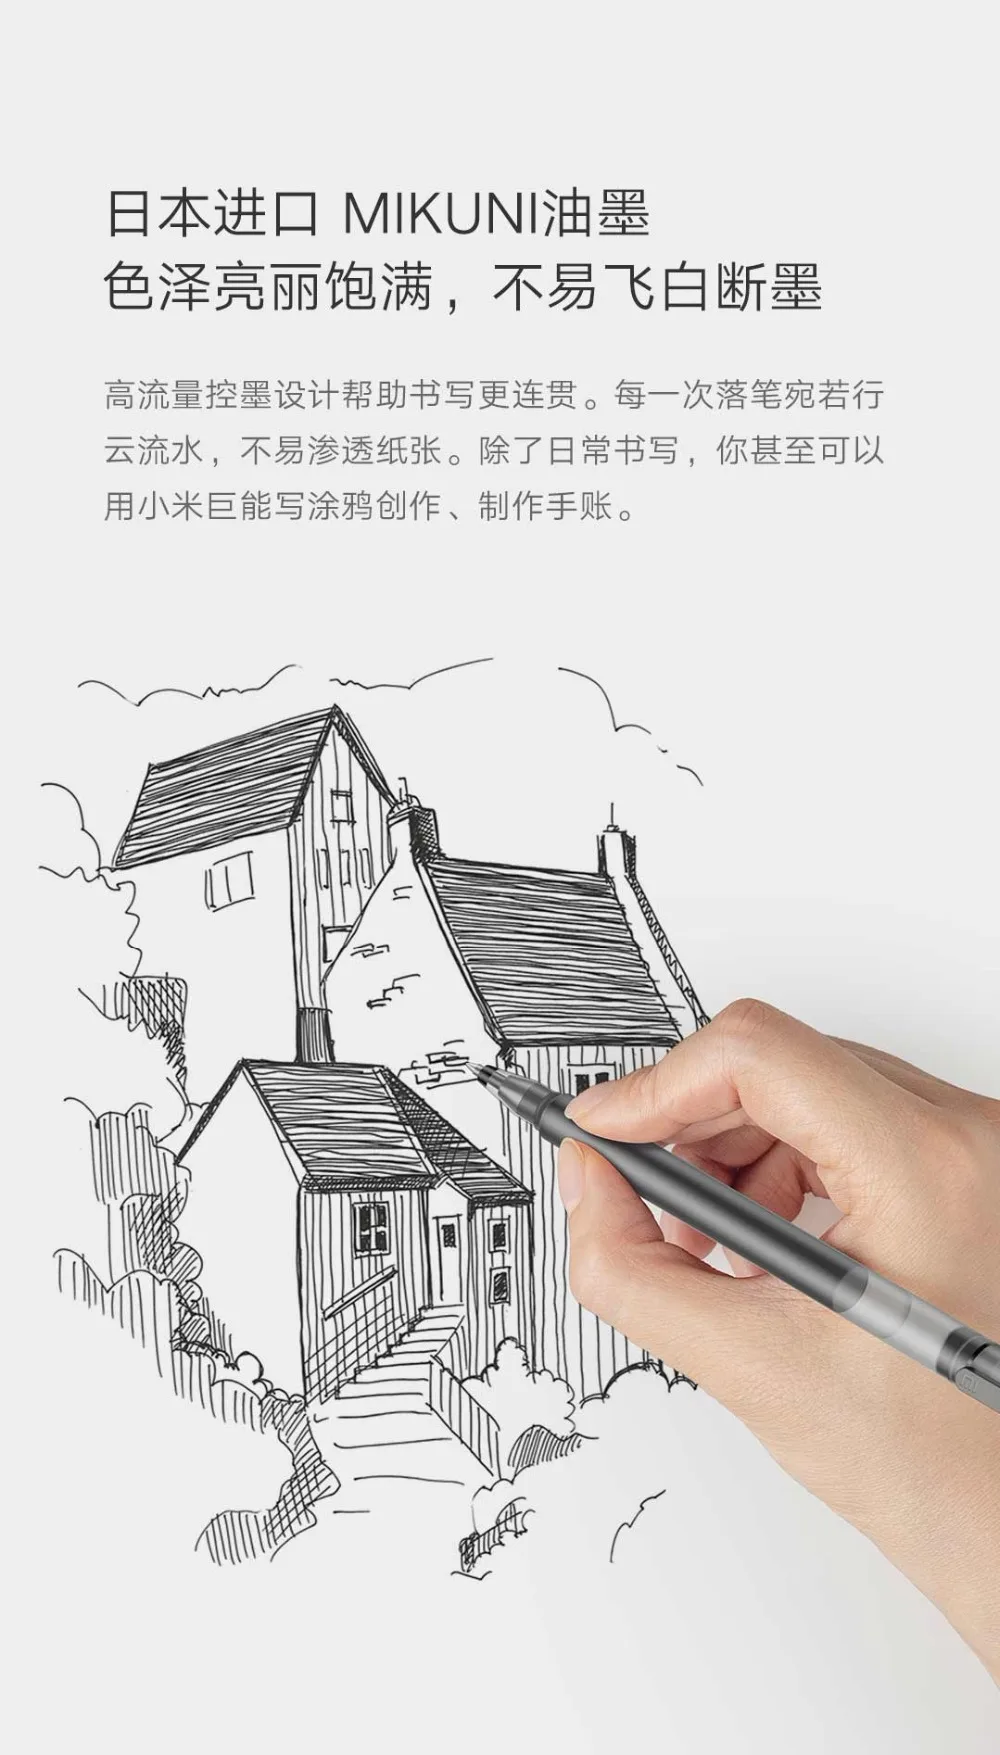 Xiao mi Pen, mi jia, суперпрочный пишущий знак, ручка mi Pen, 0,5 мм, ручки для подписи, гладкие, швейцарские, сменные, mi Kuni, японские чернила